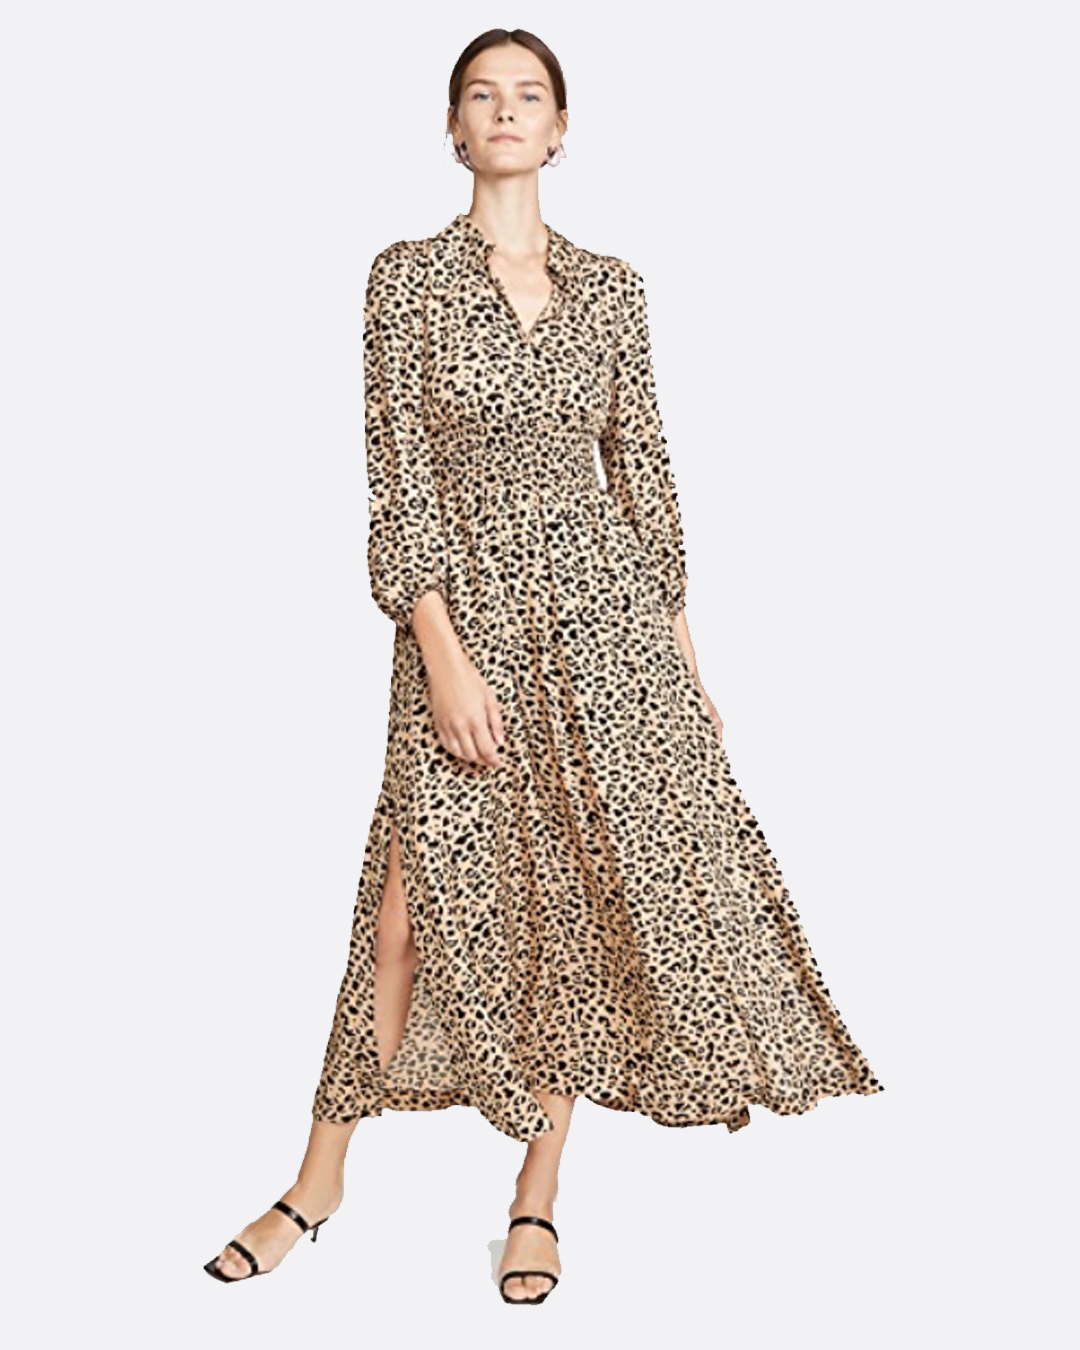 ShopBop Amber Dress Leopard Print Maxi